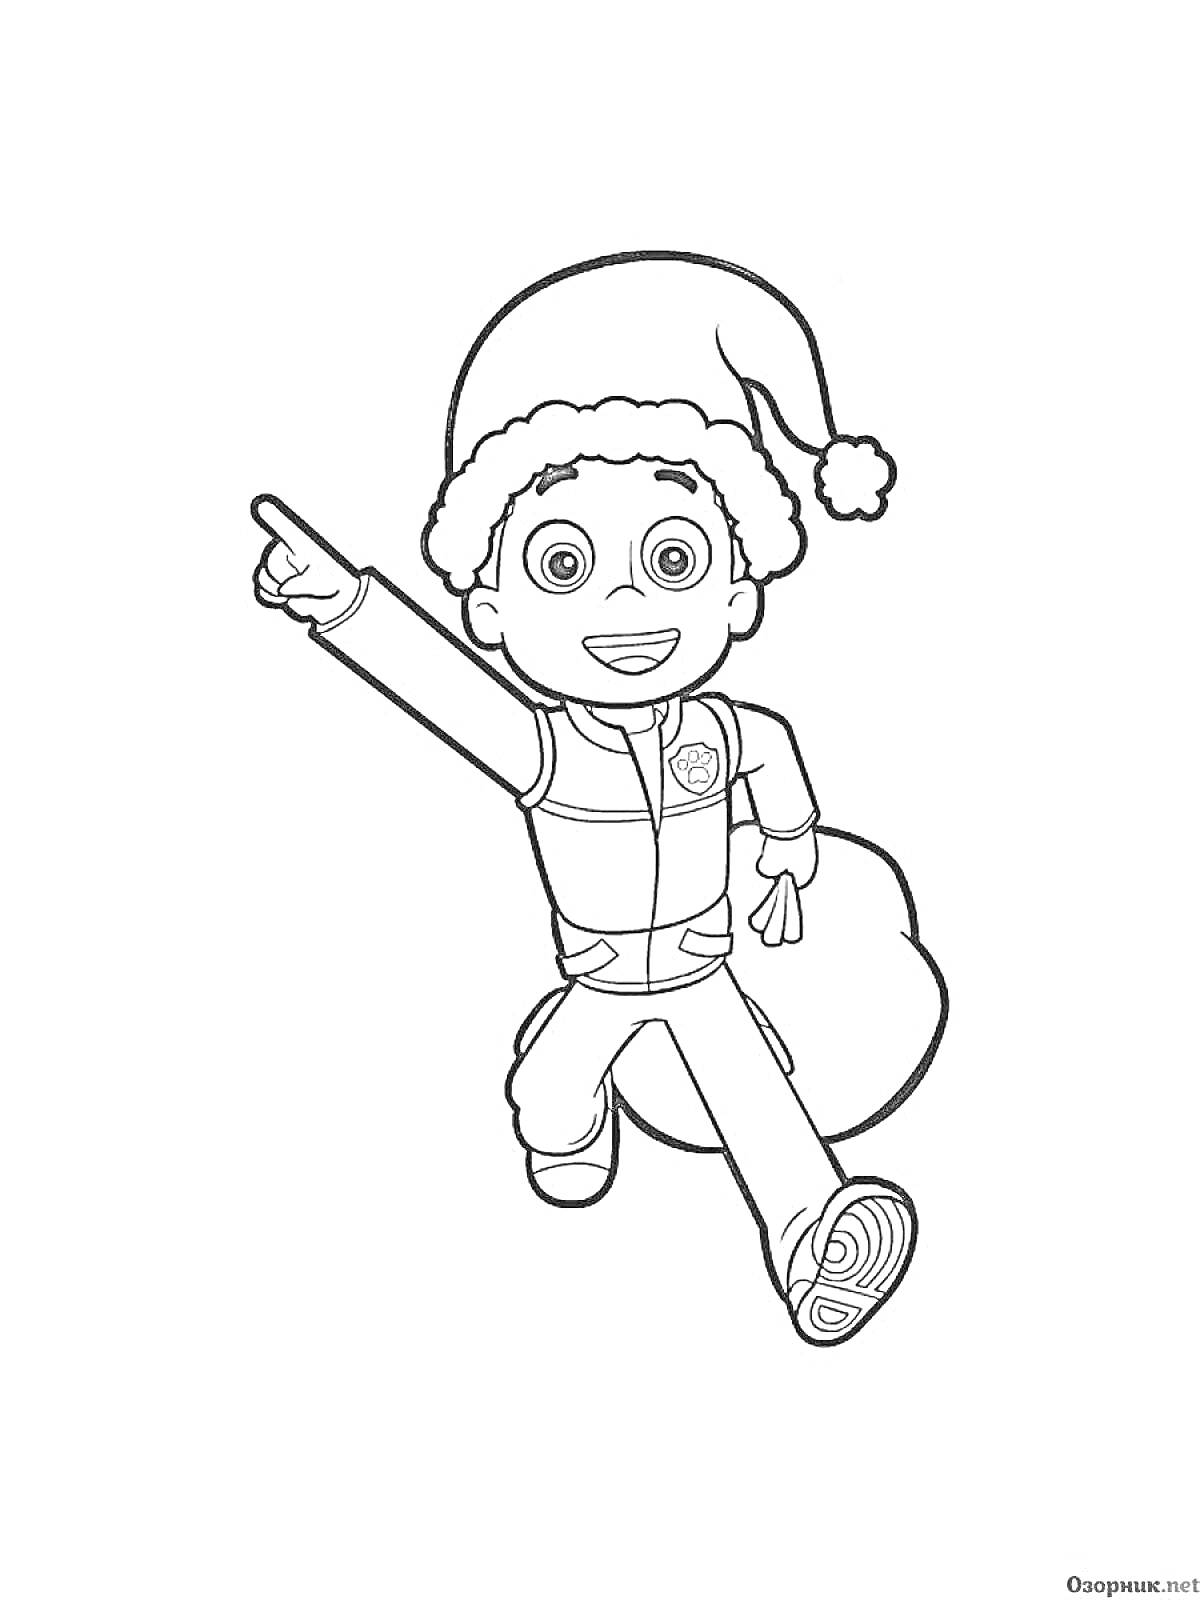 Раскраска Мальчик райдер в шапке Санты с мешком рождественских подарков